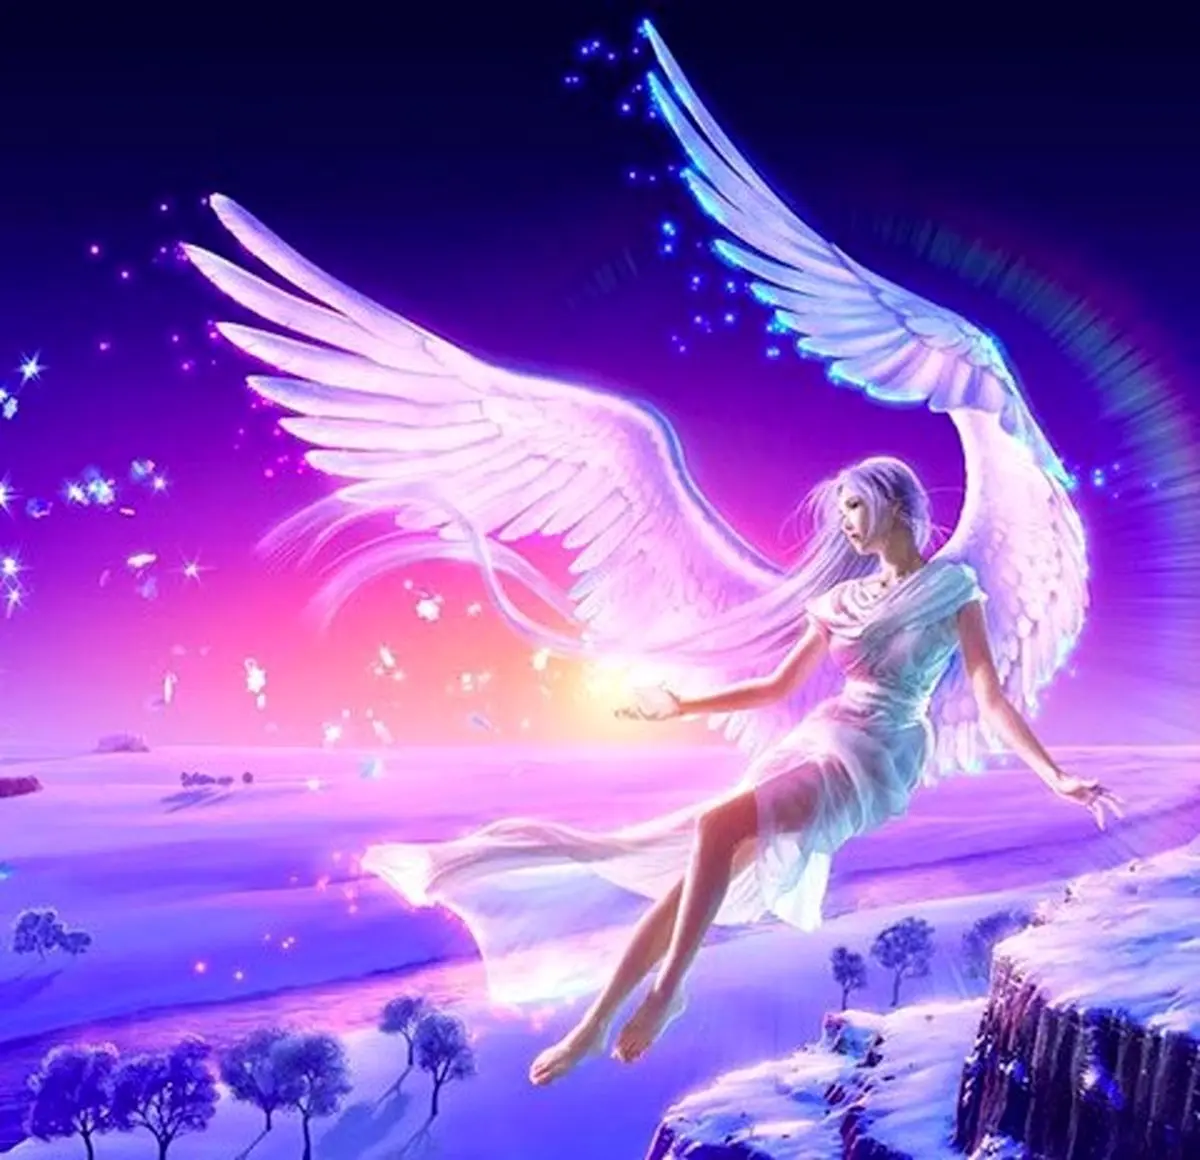 فال فرشتگان 19 آبان ماه | فرشتگان برای شما چه پیام مثبتی دارند؟